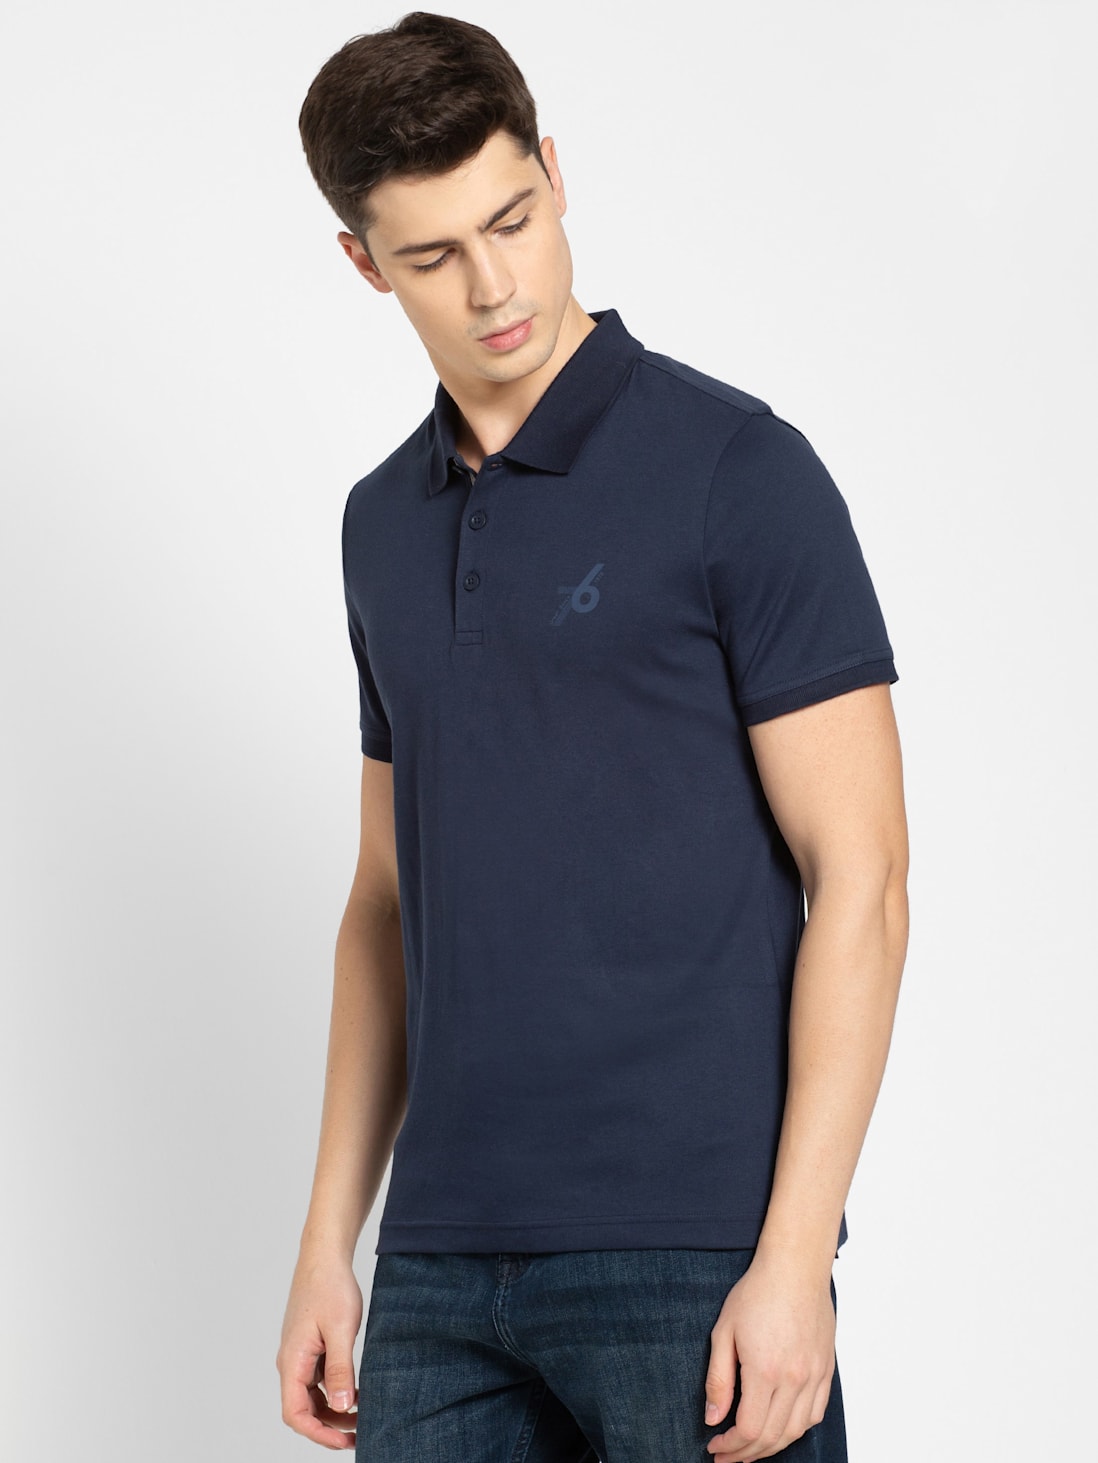 Navy Solid Half Sleeve Polo Sports T-Shirt for Men 3911 | Jockey India